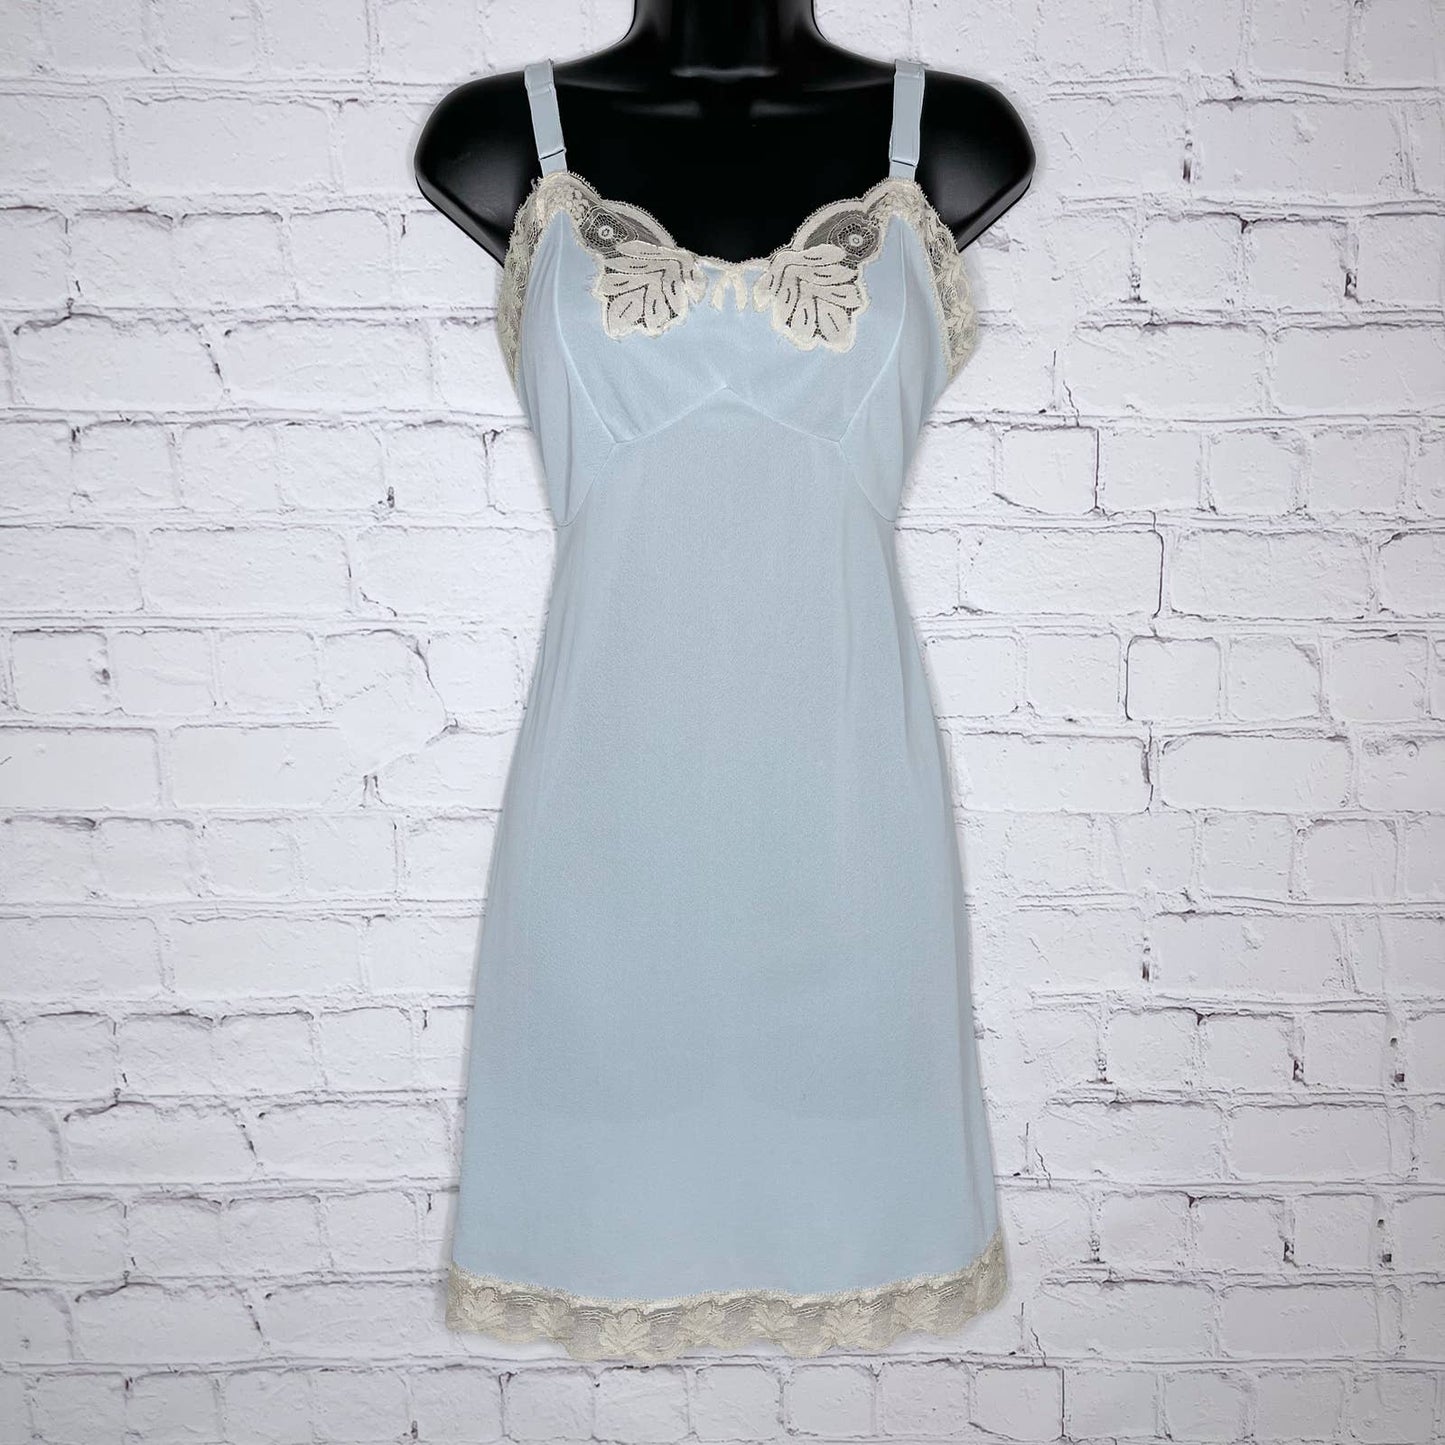 Vintage 50s Spiderweb Lace Blue Nightgown Slip Lingerie Boudoir Baronet Size 36